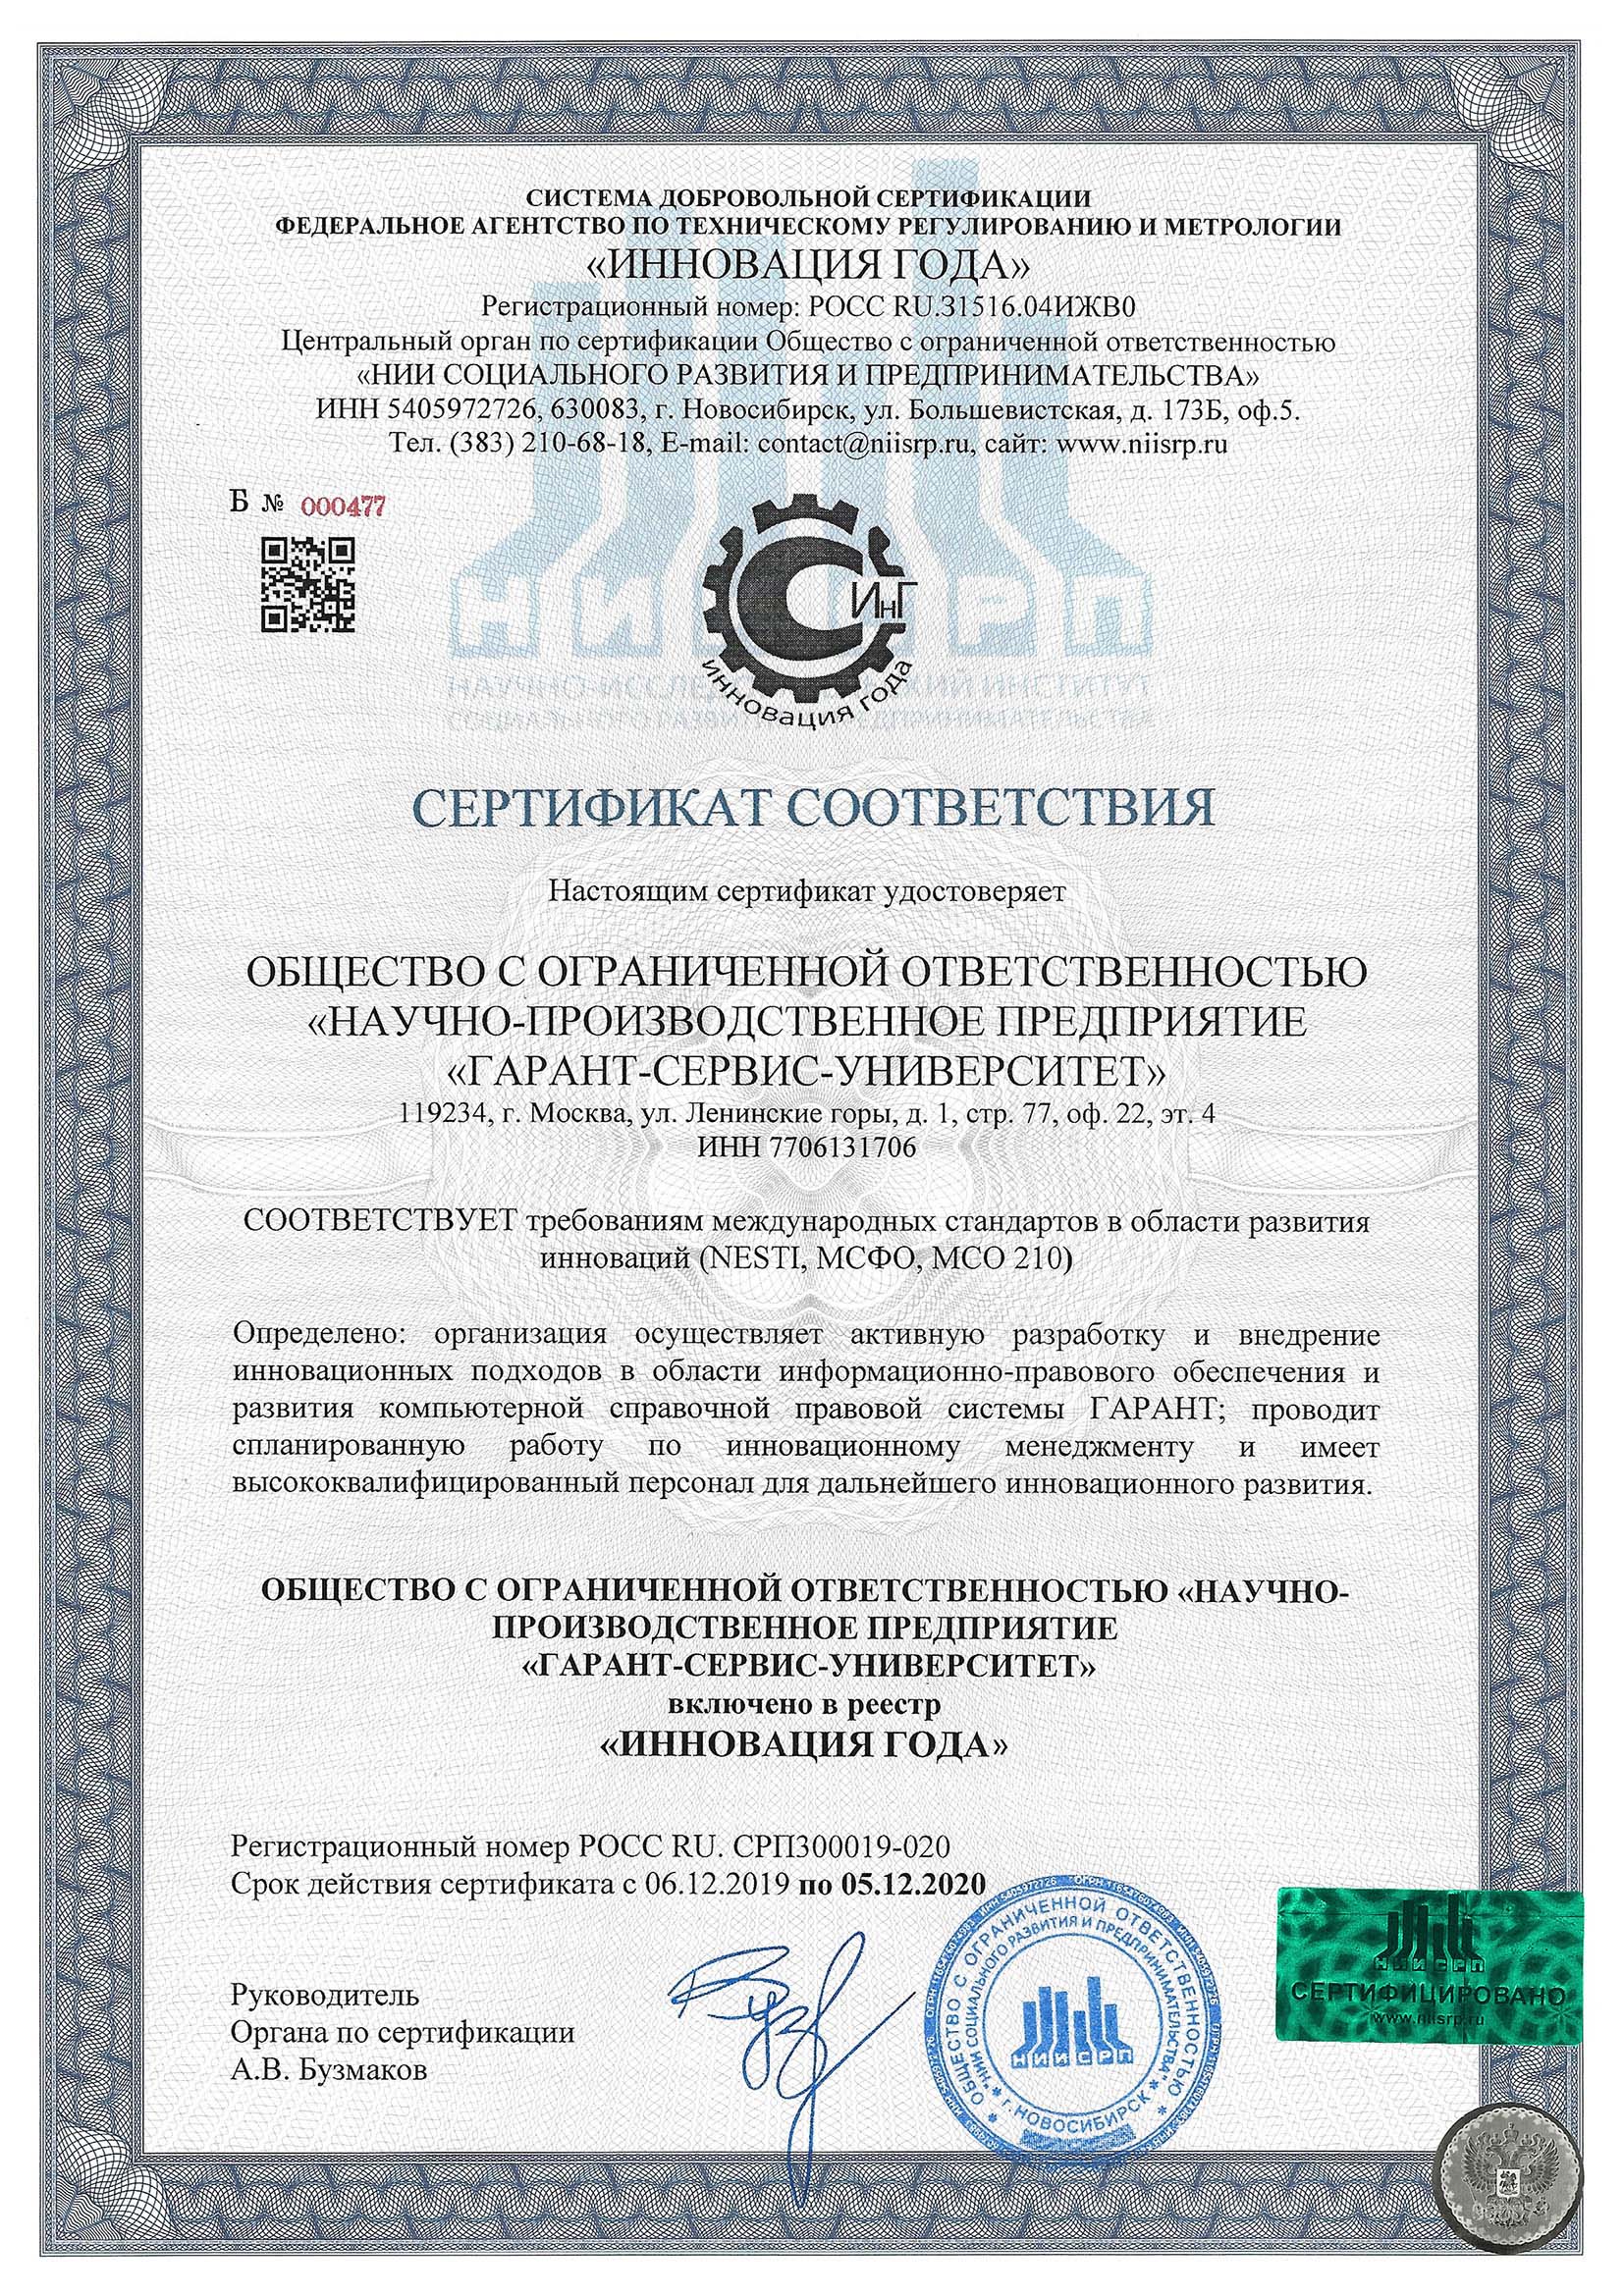 Сертификат соответствия ООО «НПП «ГАРАНТ-СЕВИС-УНИВЕРСИТЕТ» требованиям международных стандартов в области развития инноваций (NESTI, МСФО, МСО210)